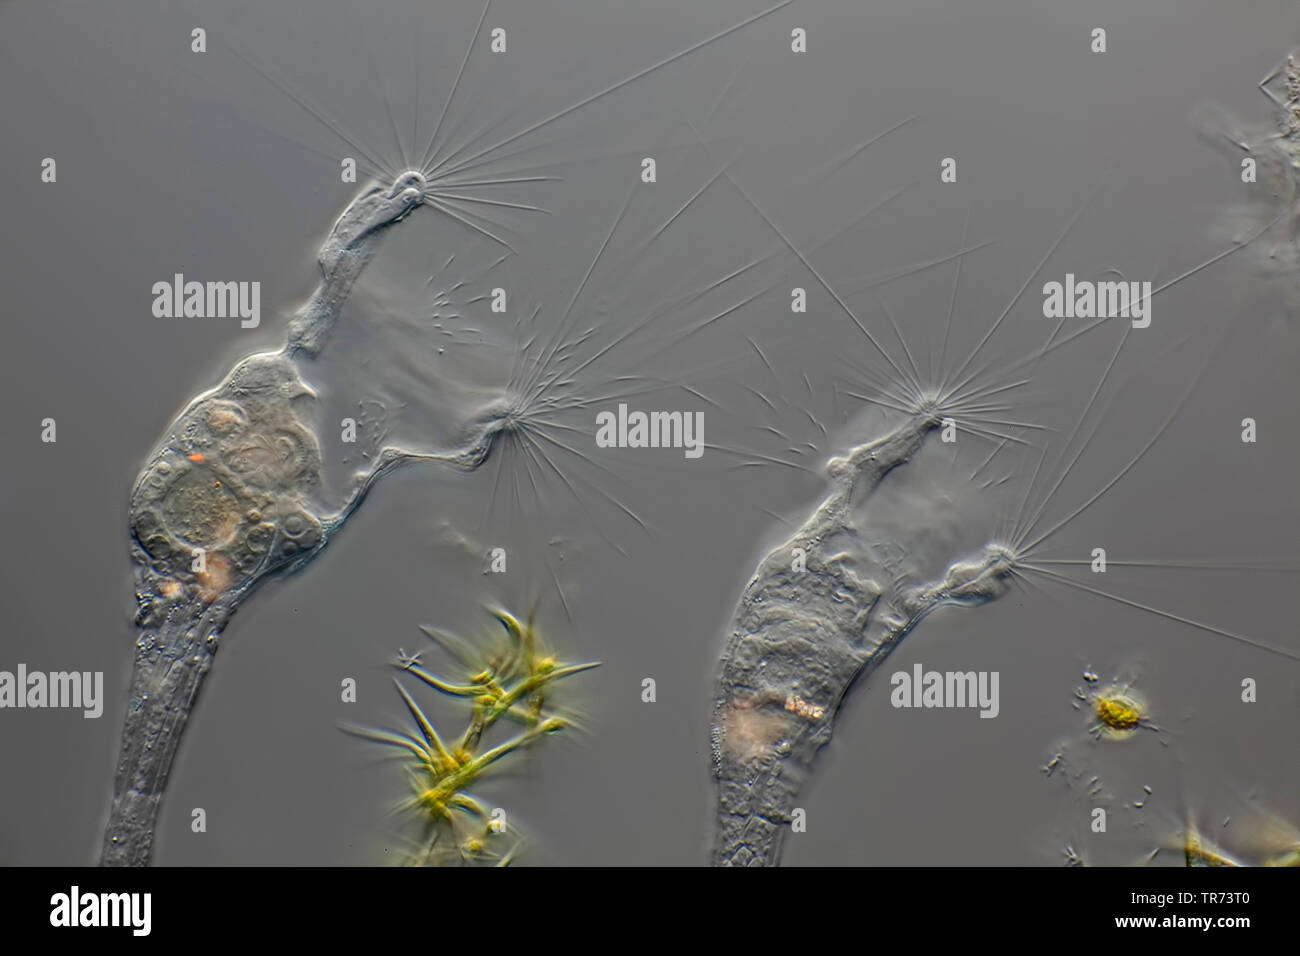 Les rotifères (Collotheca spec.), sur des algues filamenteuses, microscopie en contraste d'interférence différentielle, x 100, Allemagne Banque D'Images